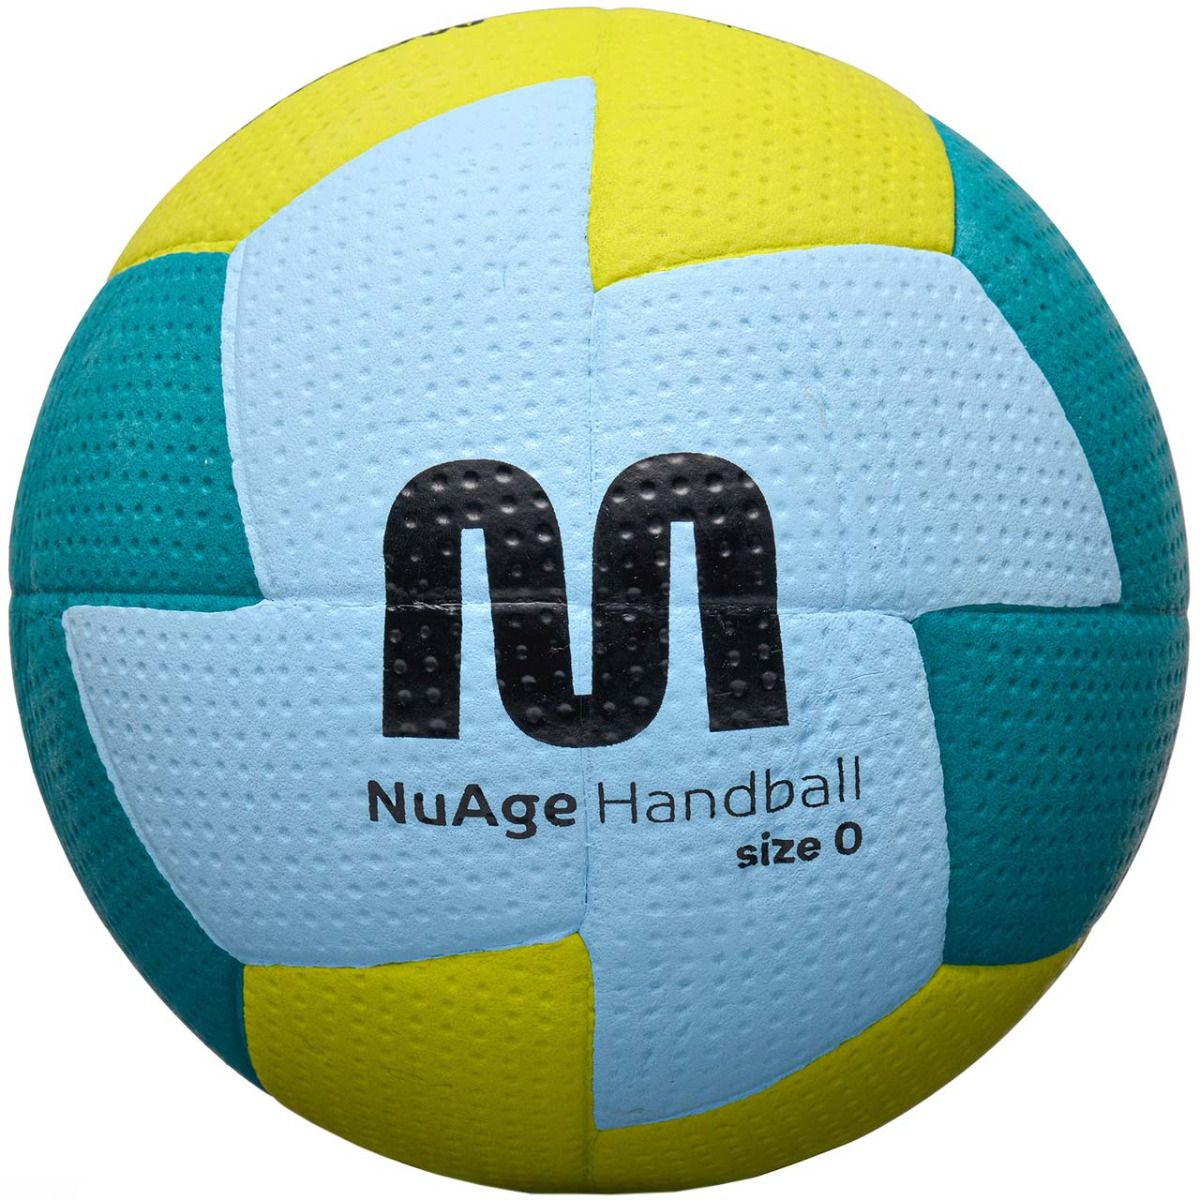 Meteor Handball Nuage Mini 0 16696